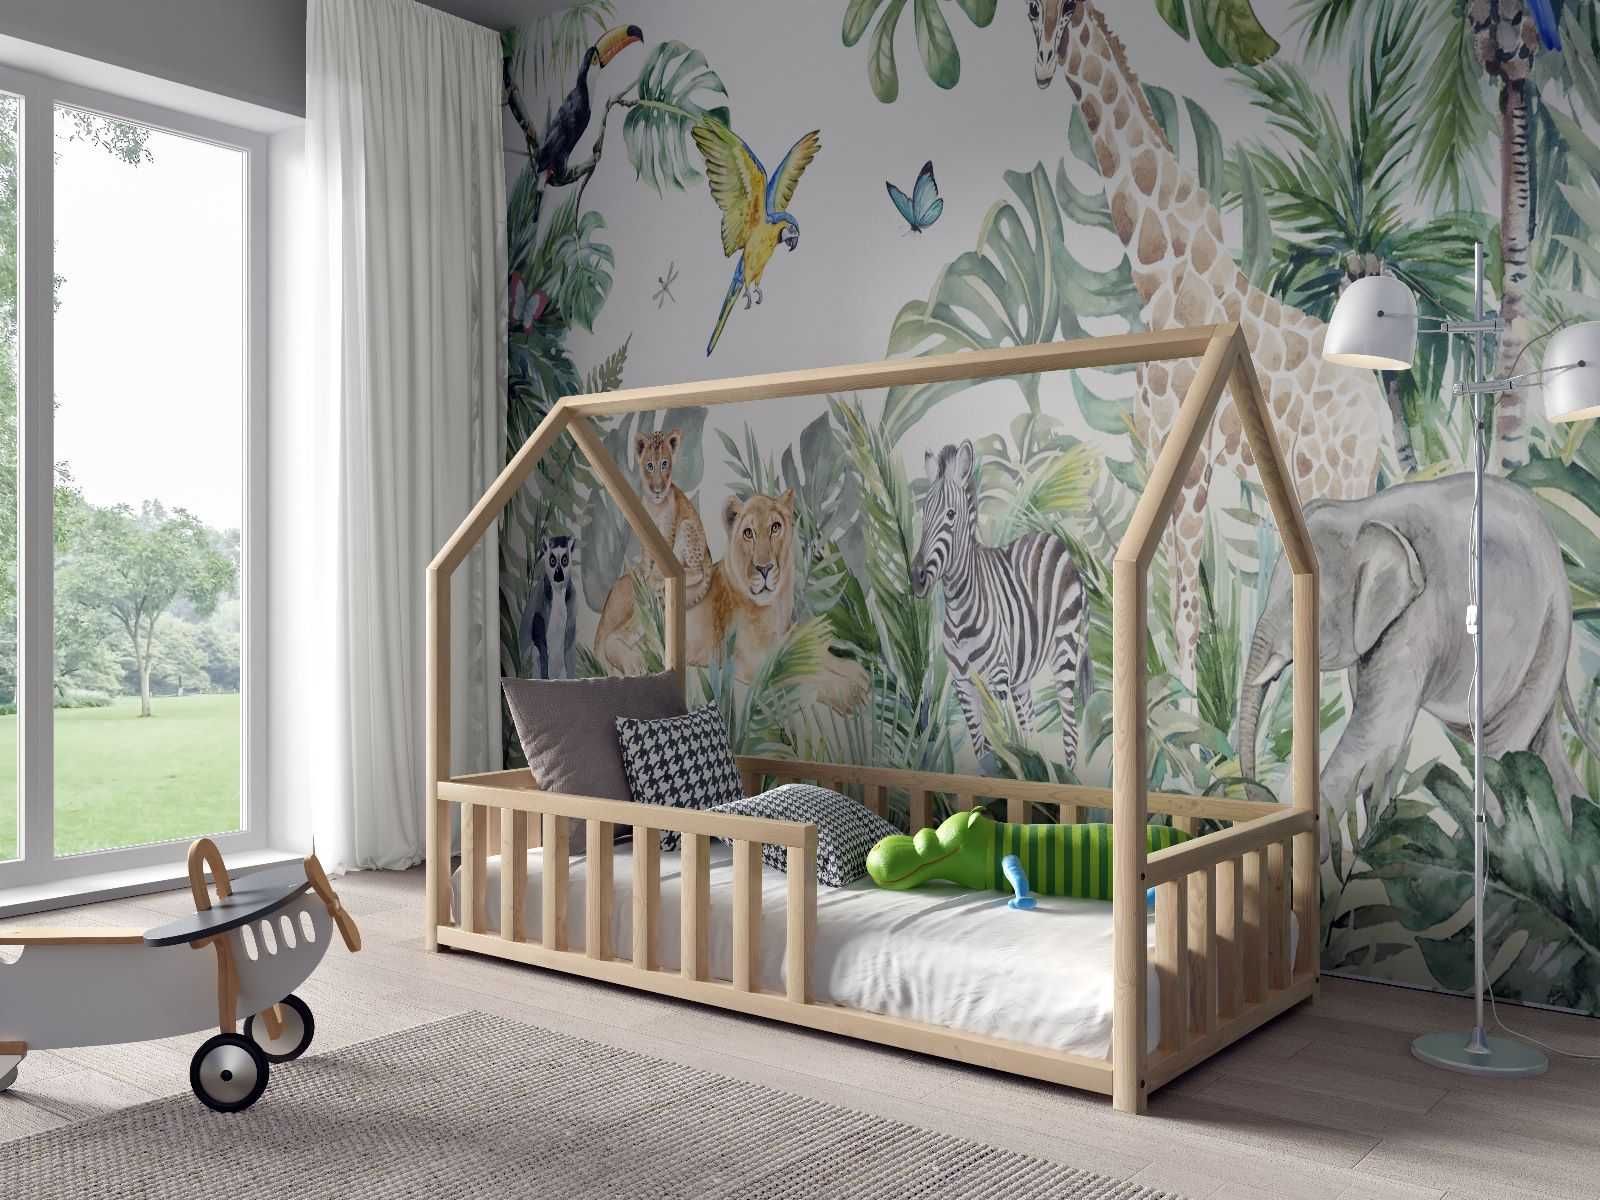 Sosnowe łóżko domek dla dziecka ANTOŚ 160x80 HIT